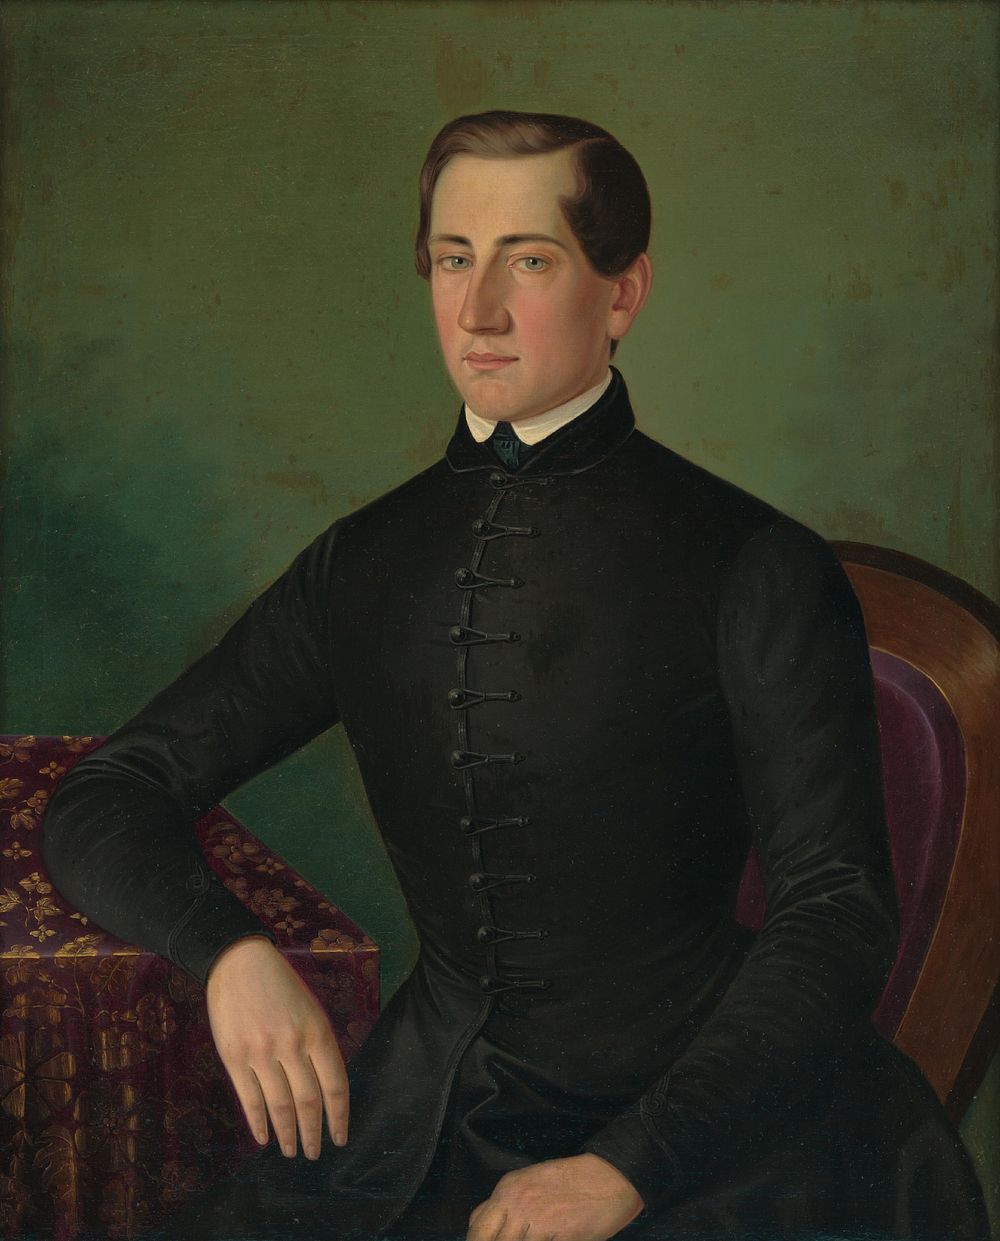 Portrait of a man, Peter Michal Bohuň